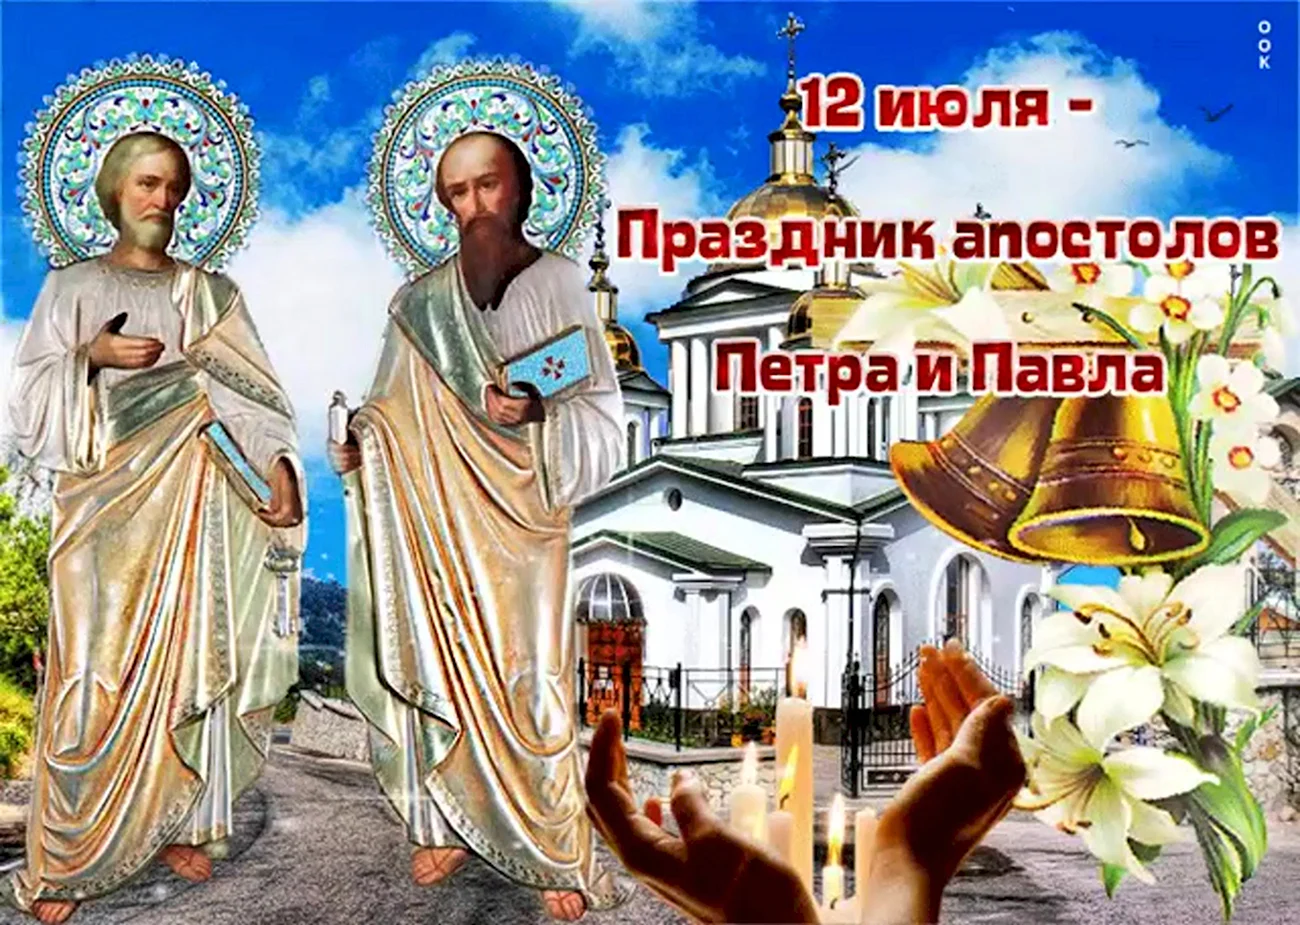 12 Июля праздник апостолов Петра и Павла. Поздравление